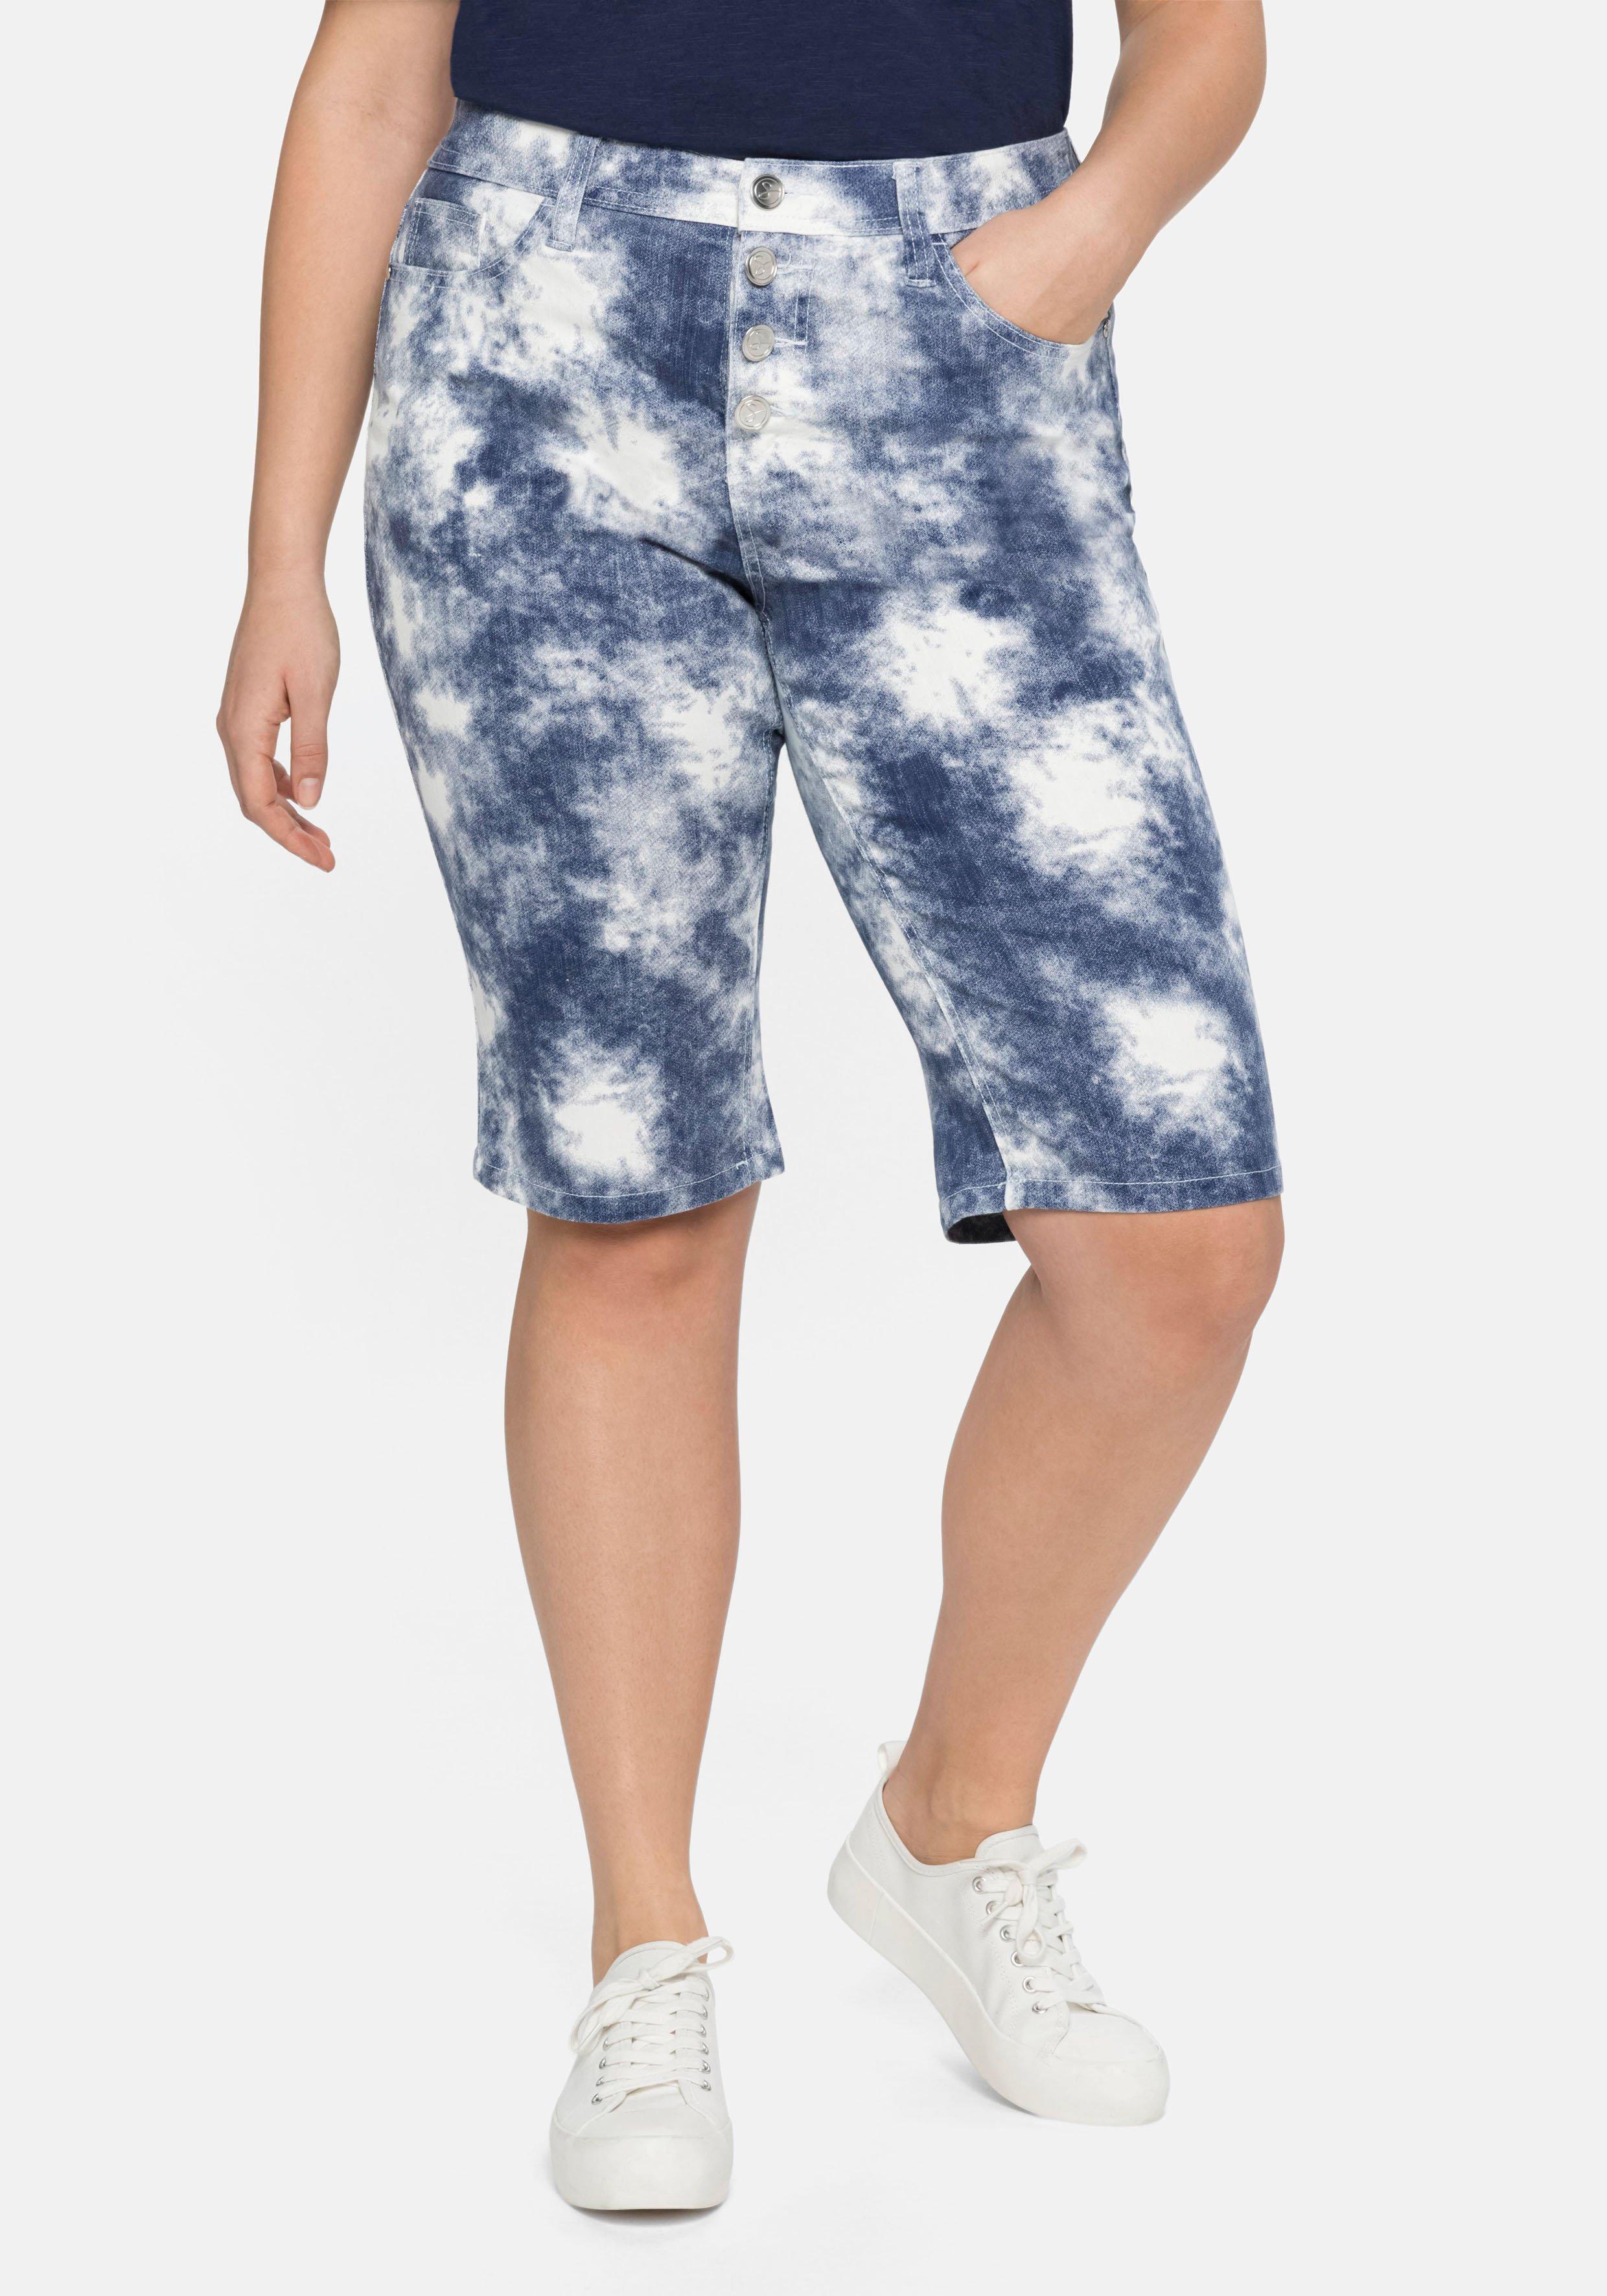 Jeansbermudas mit Batikdruck, in 5-Pocket-Form - royalblau-weiß | sheego